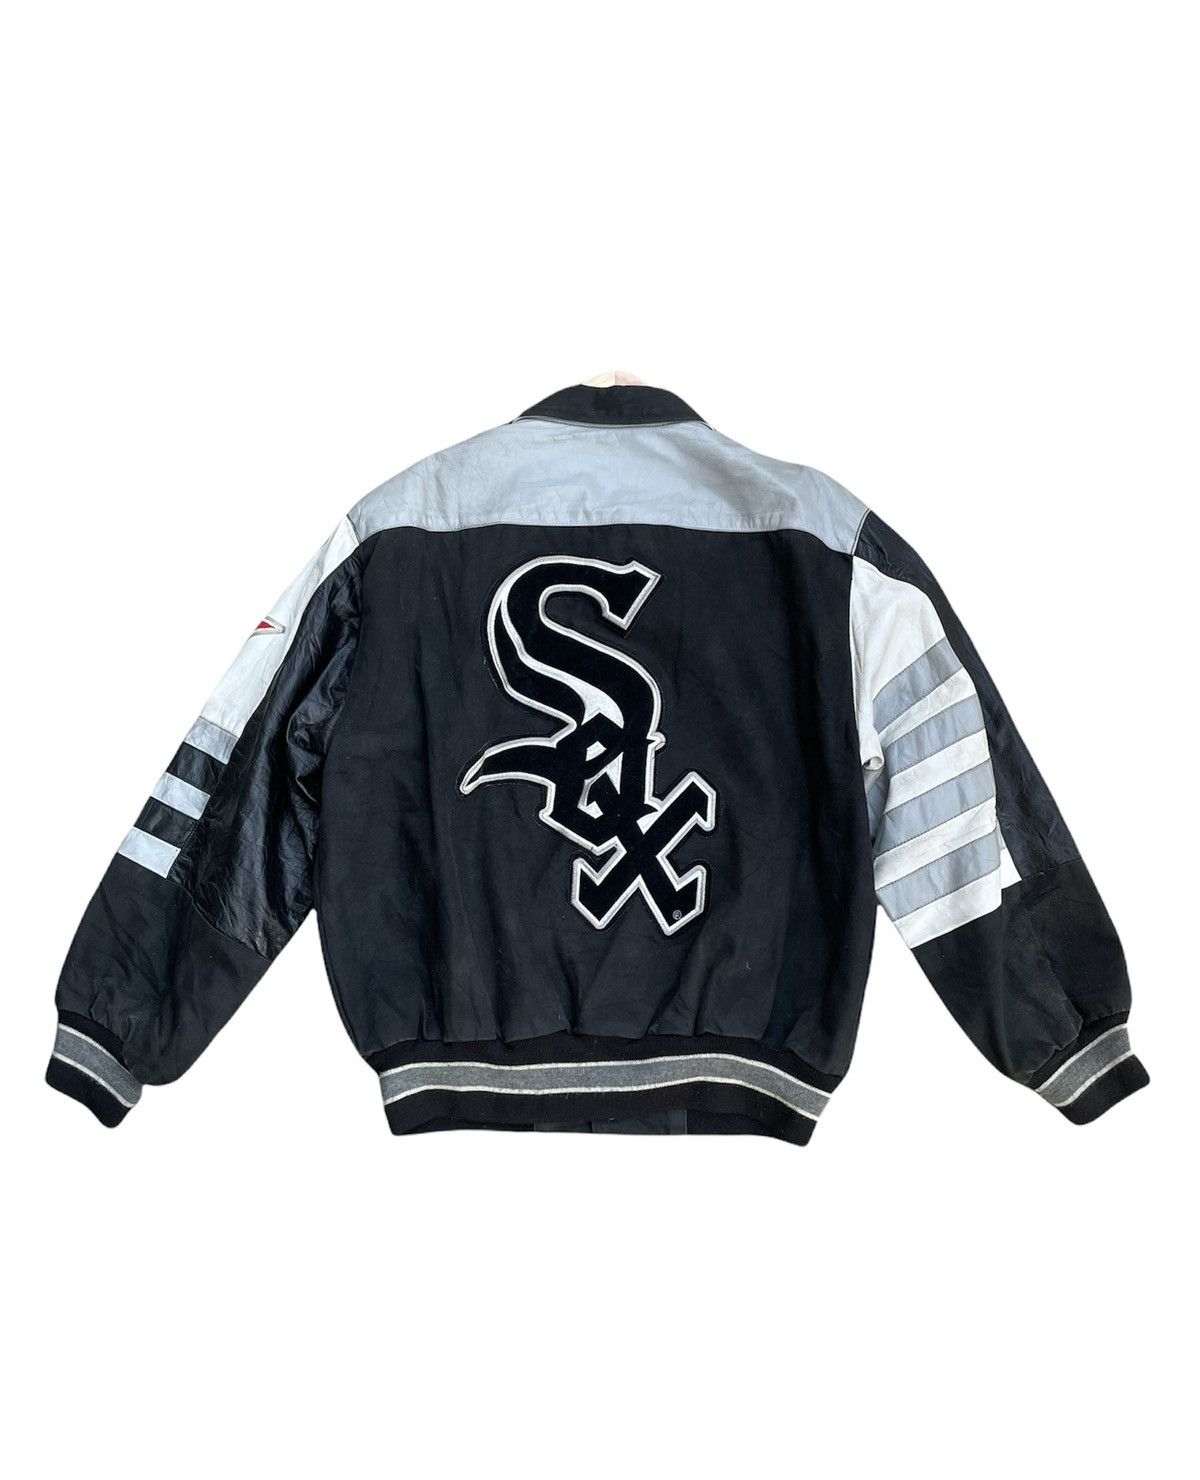 Rare Chicago White Sox Jeff Hamilton Leather Jacket (XXL) – Retro